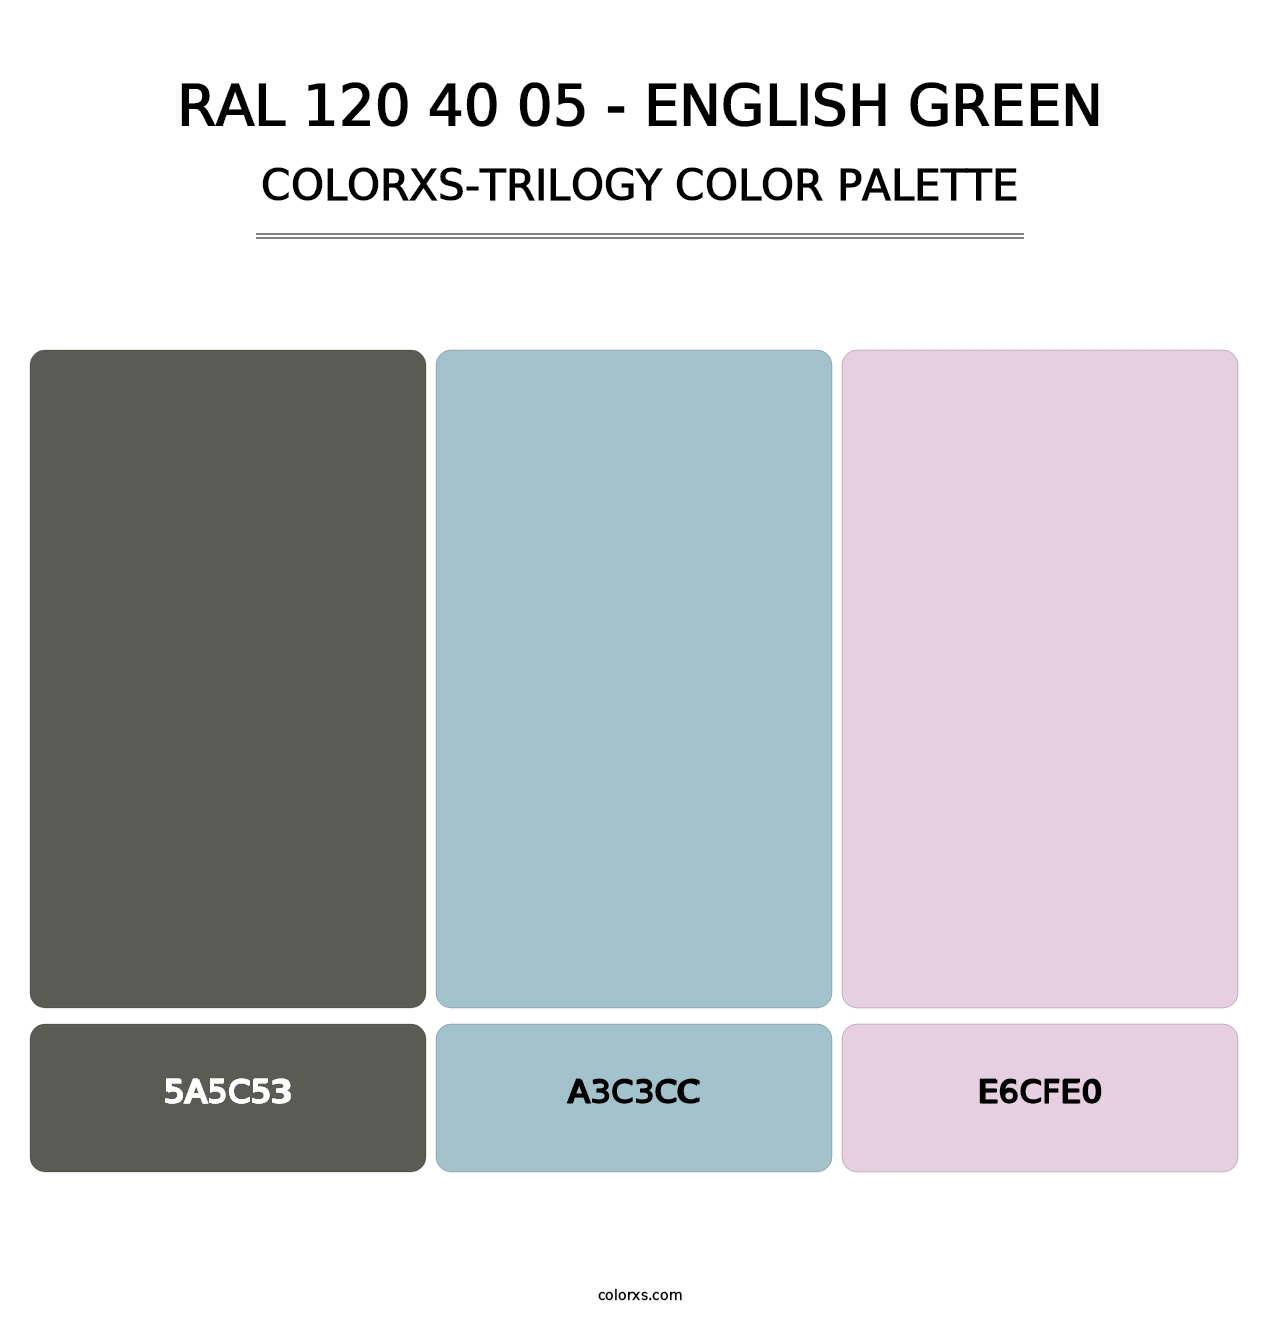 RAL 120 40 05 - English Green - Colorxs Trilogy Palette